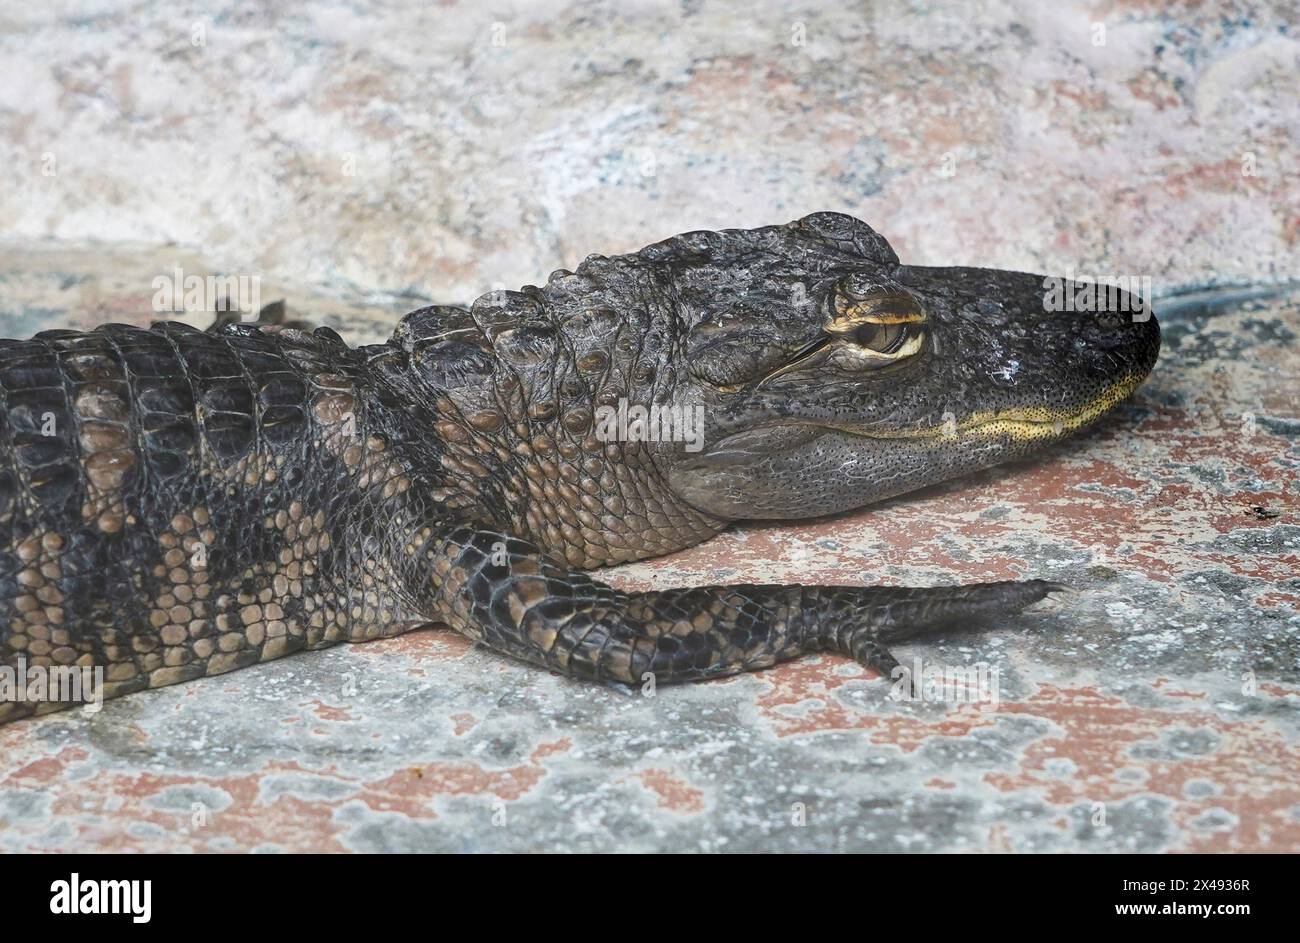 17.04.24, Everglades City, Florida, US-amerikanischer Alligator (Alligator mississippiensis) in den Florida Everglades, von einem Luftschiff aus gesehen, Everglade City, Florida, Mittwoch, 17. April, 2024. Foto von Jennifer Graylock-Graylock.com 917-519-7666 Stockfoto